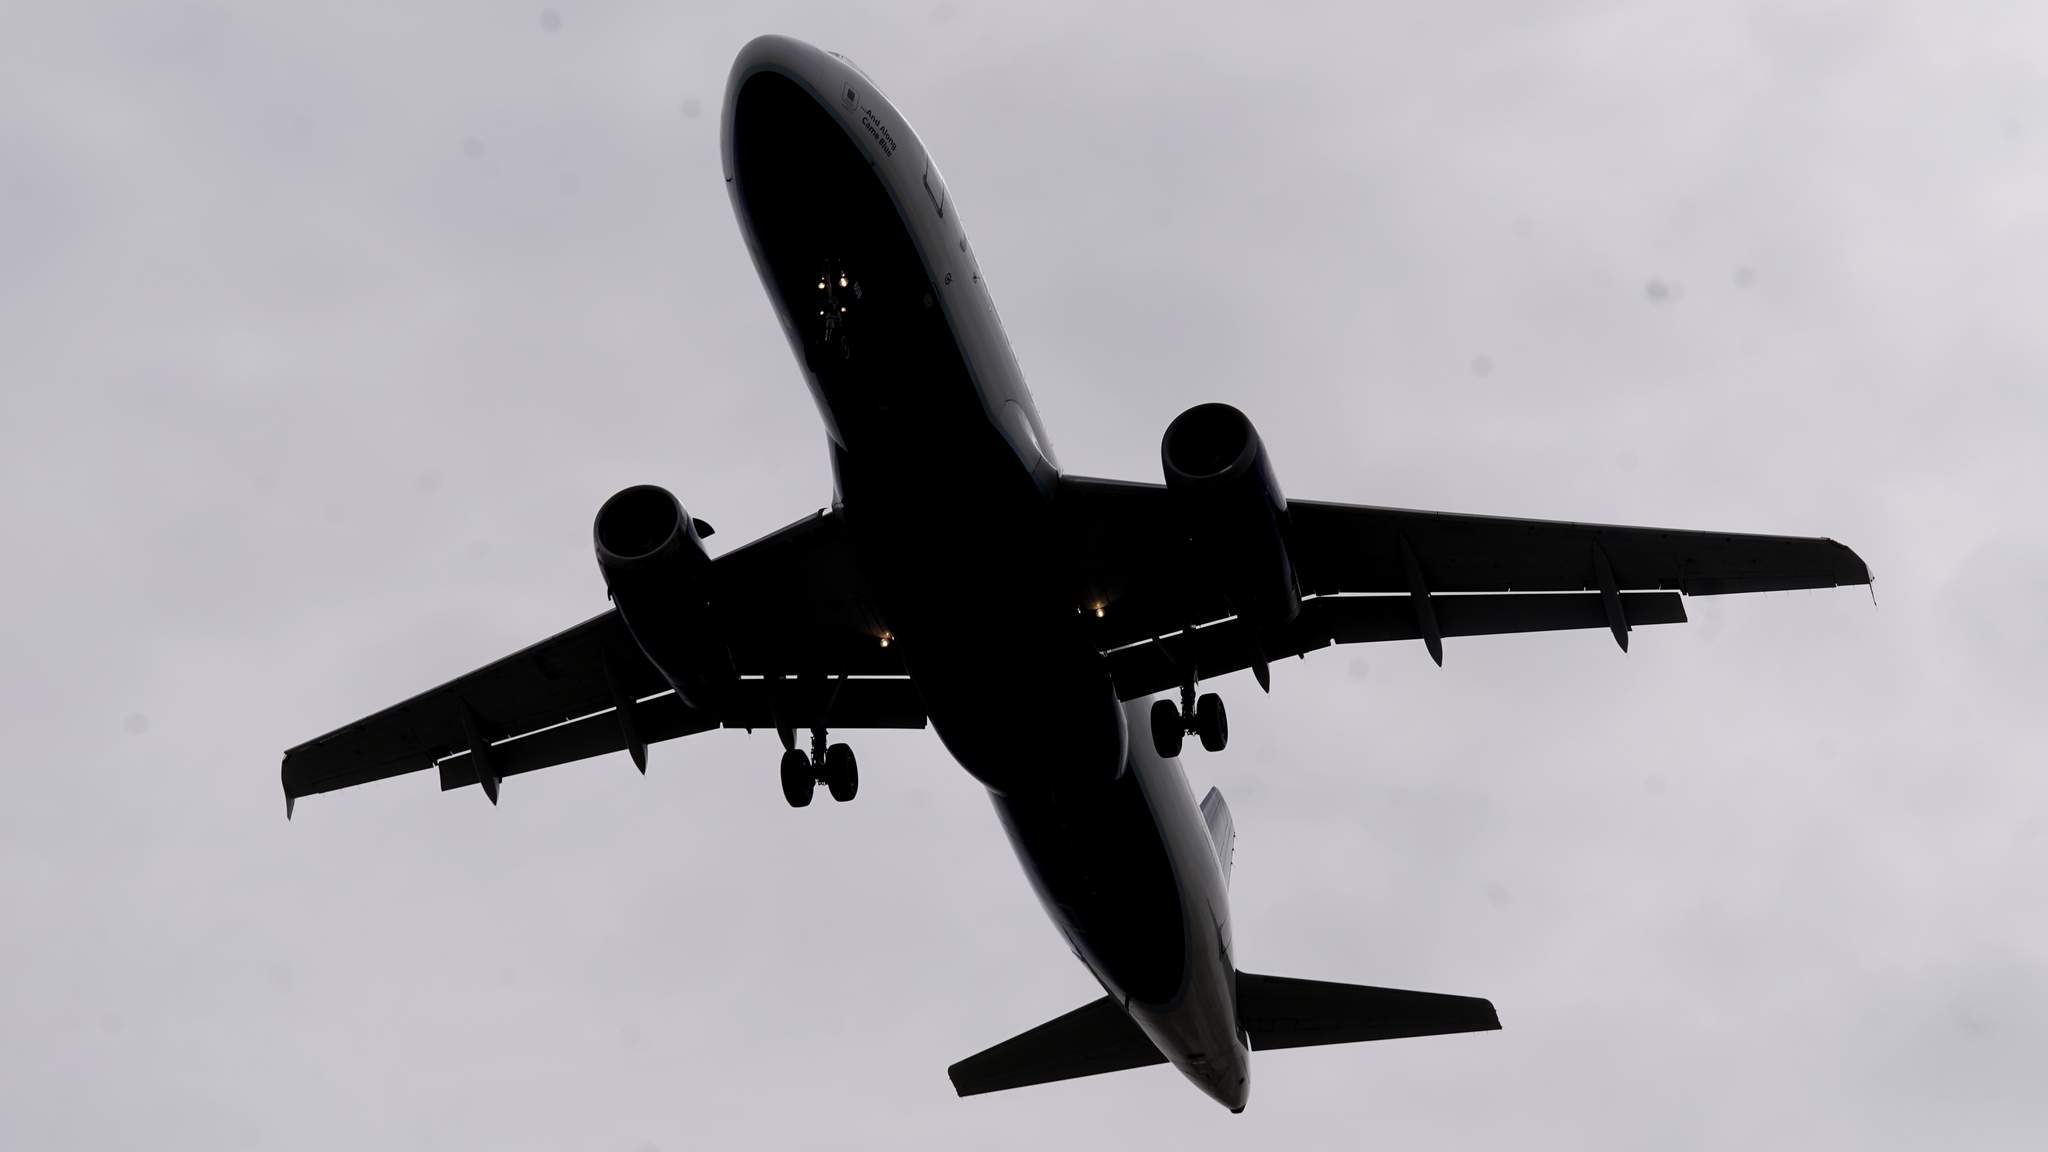 Report: Flight to Florida diverted after passenger bites man’s ear